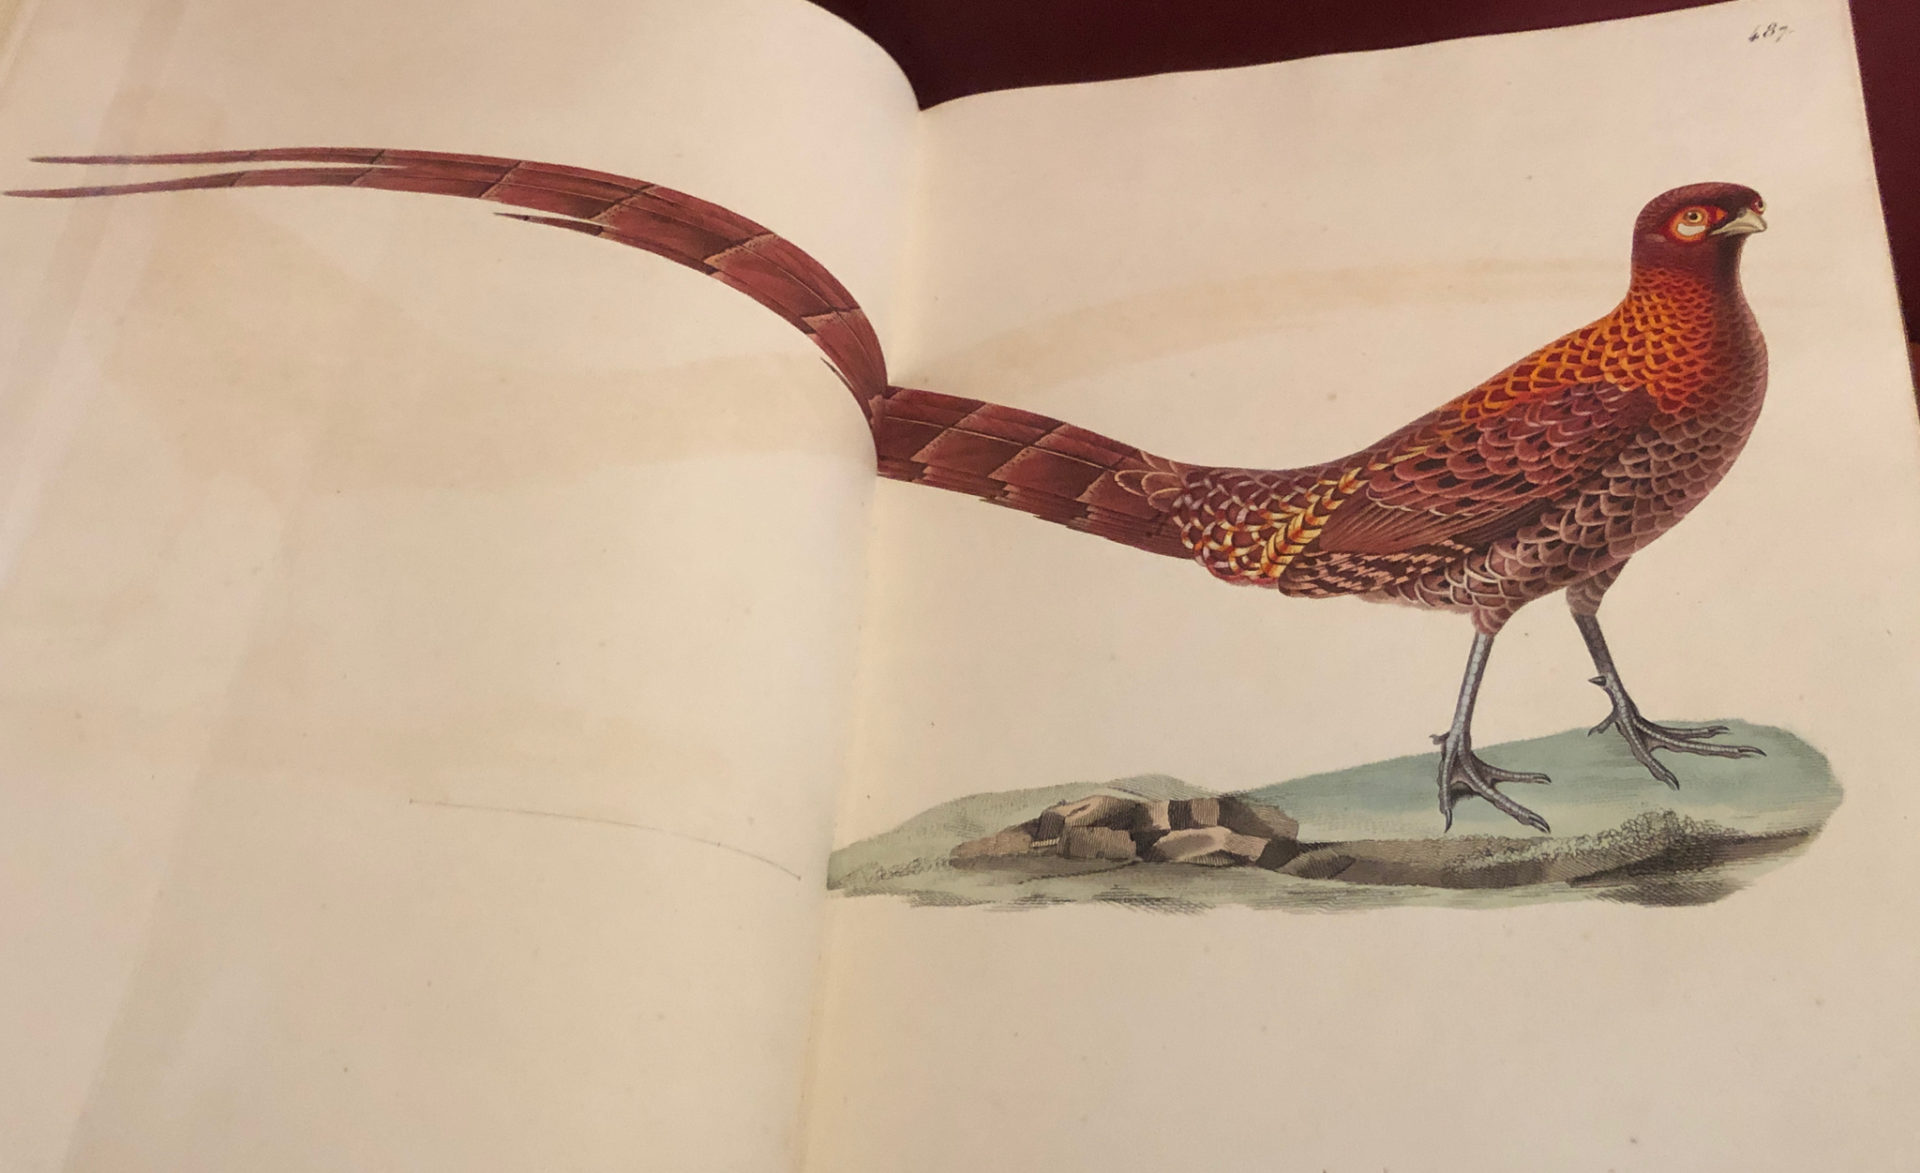 Ein Fasan aus dem Buch Birds of America von Audubon.